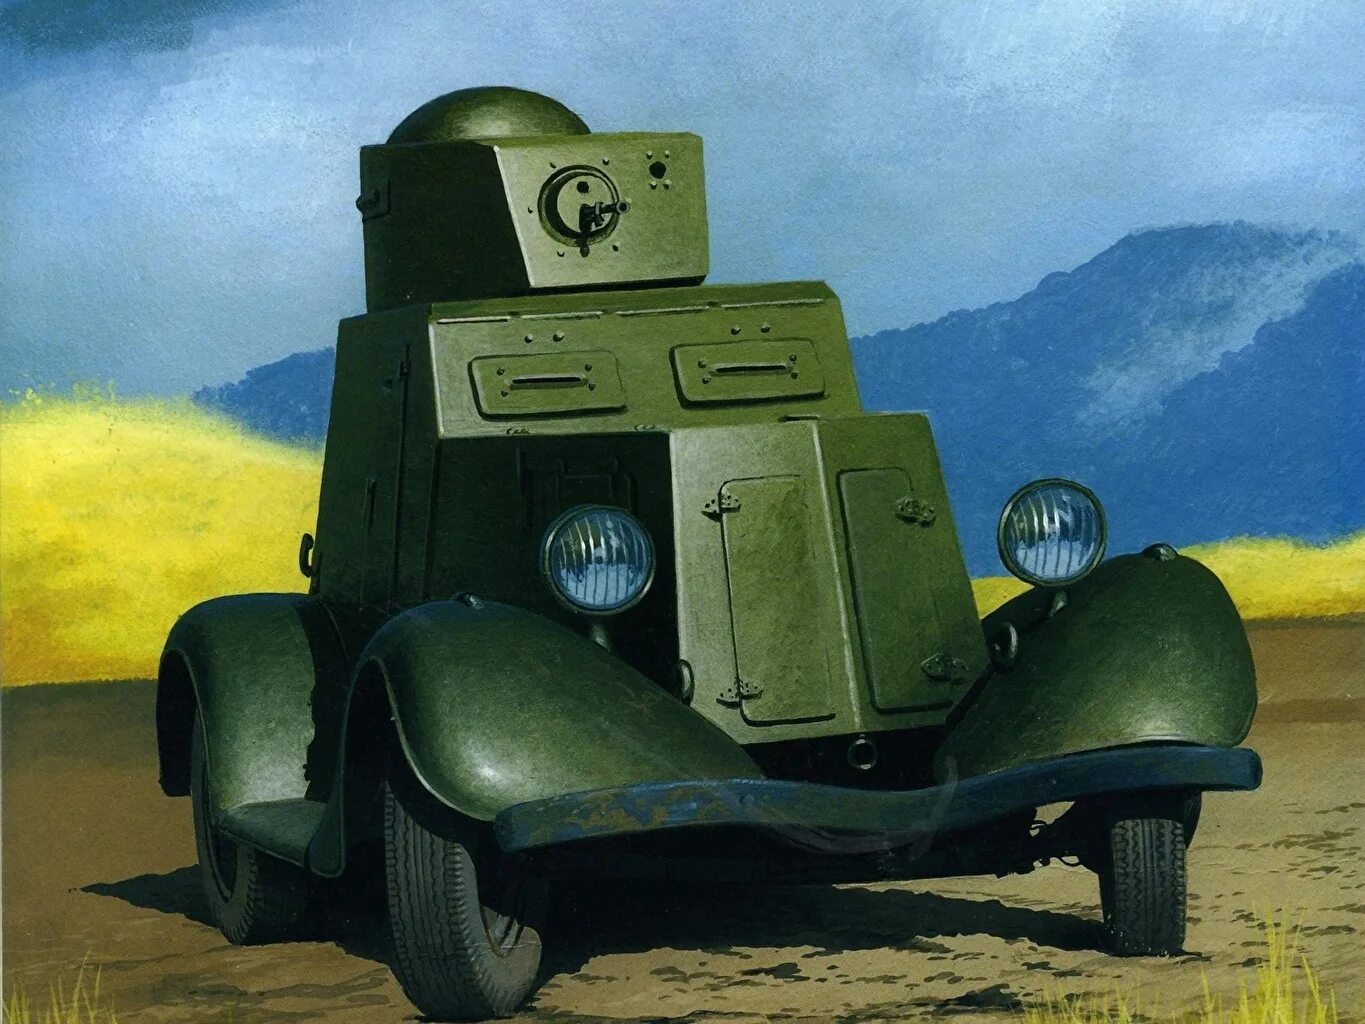 Ба х. Ба-20 бронеавтомобиль. Ба-10 бронеавтомобиль. Советский бронеавтомобиль ба-20. Бронеавтомобили СССР второй мировой войны.